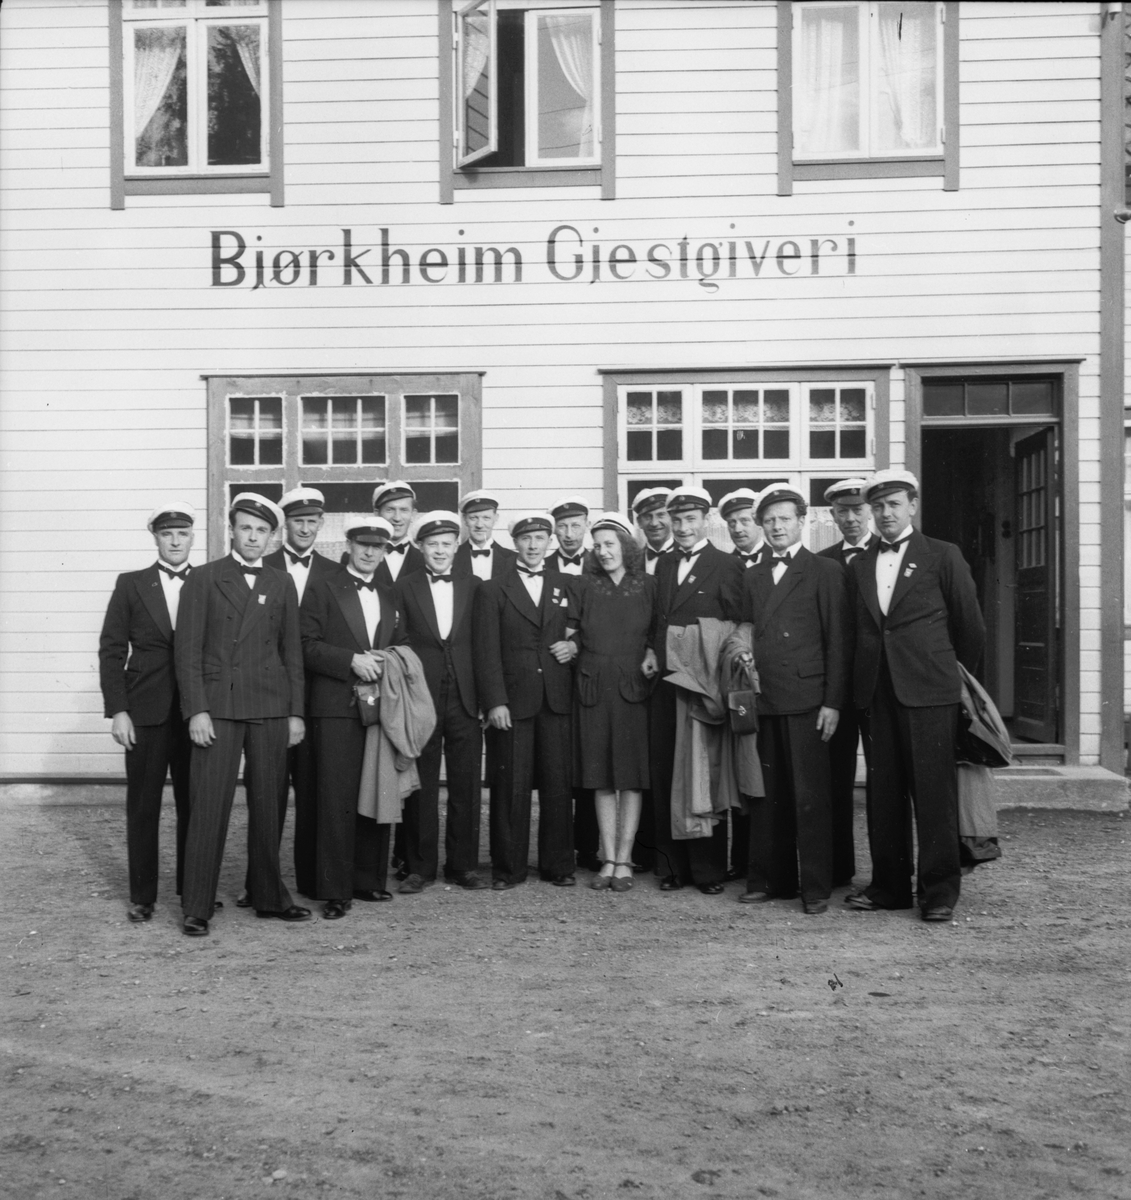 Odda Mannskor framfor Bjørkheim Gjestgiveri